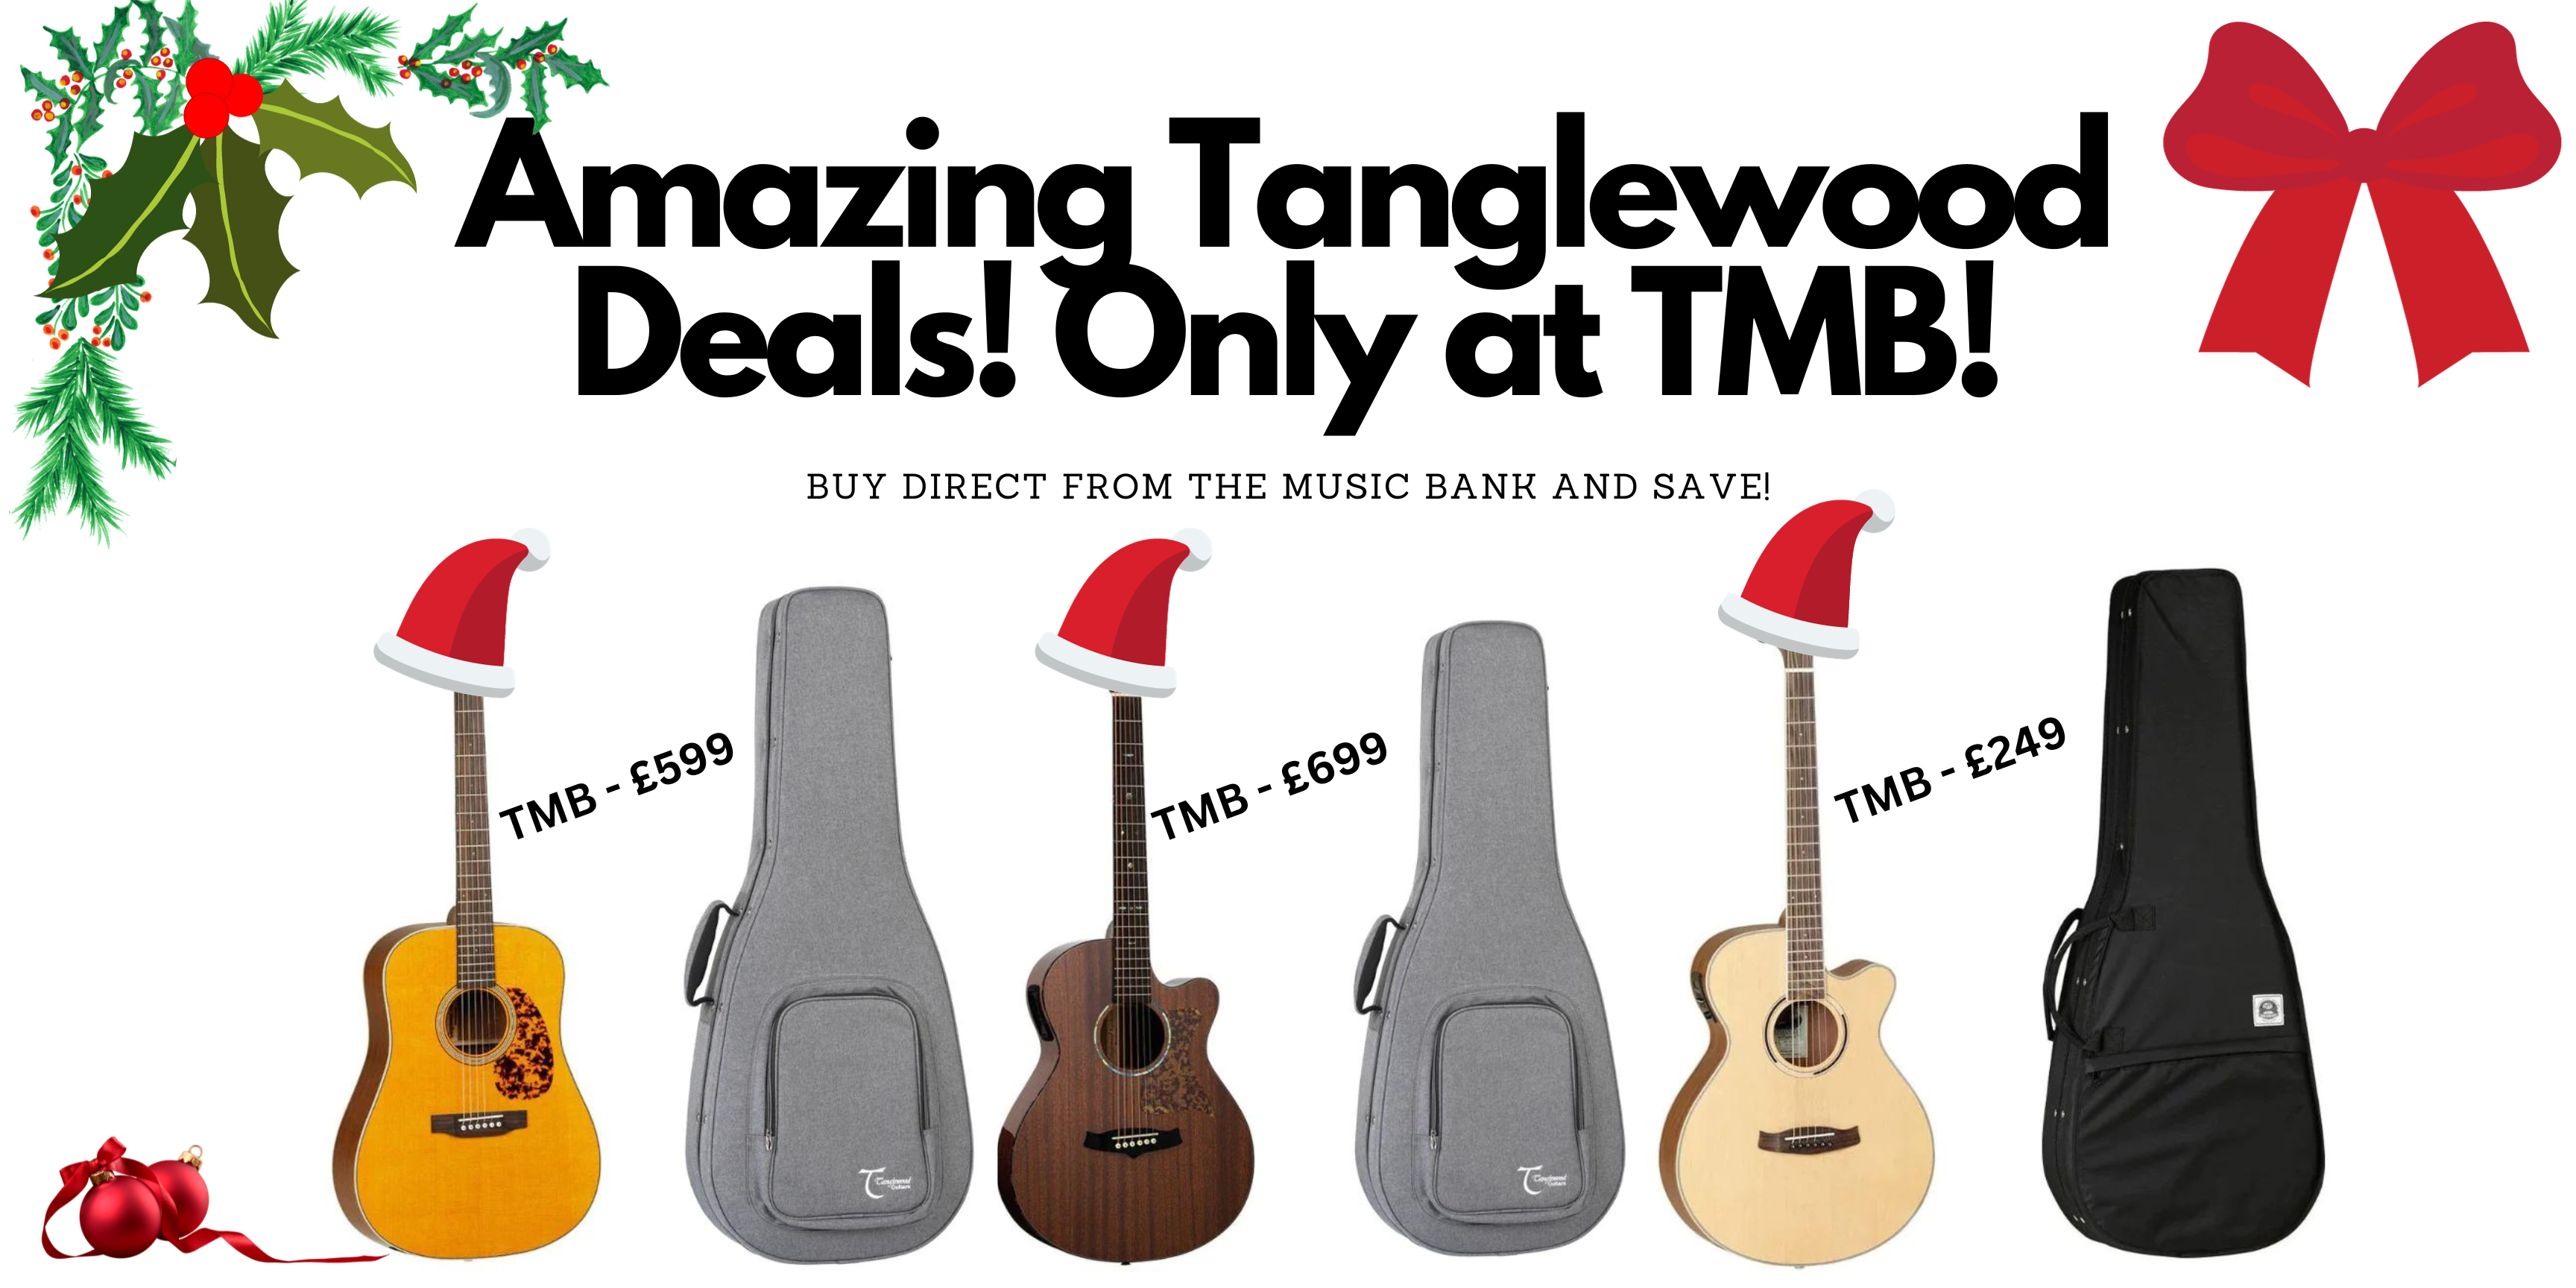 Amazing Tanglewood Deals!